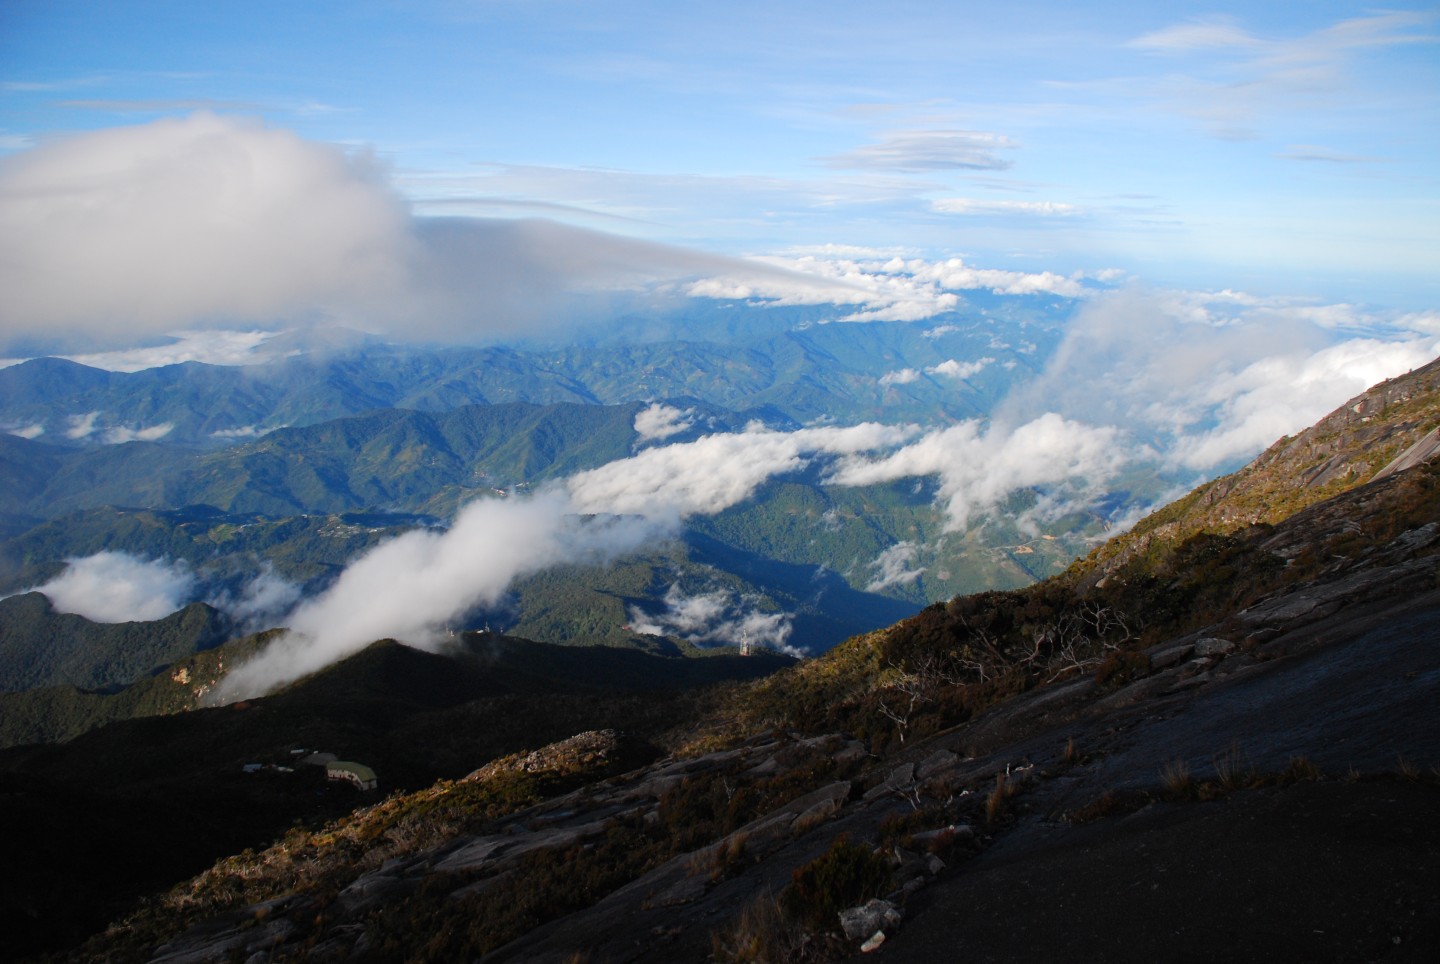 Malaysia, Sabah, Borneo - Mount Kinabalu ©Tourism Malaysia EXPIRES 24.10.2025